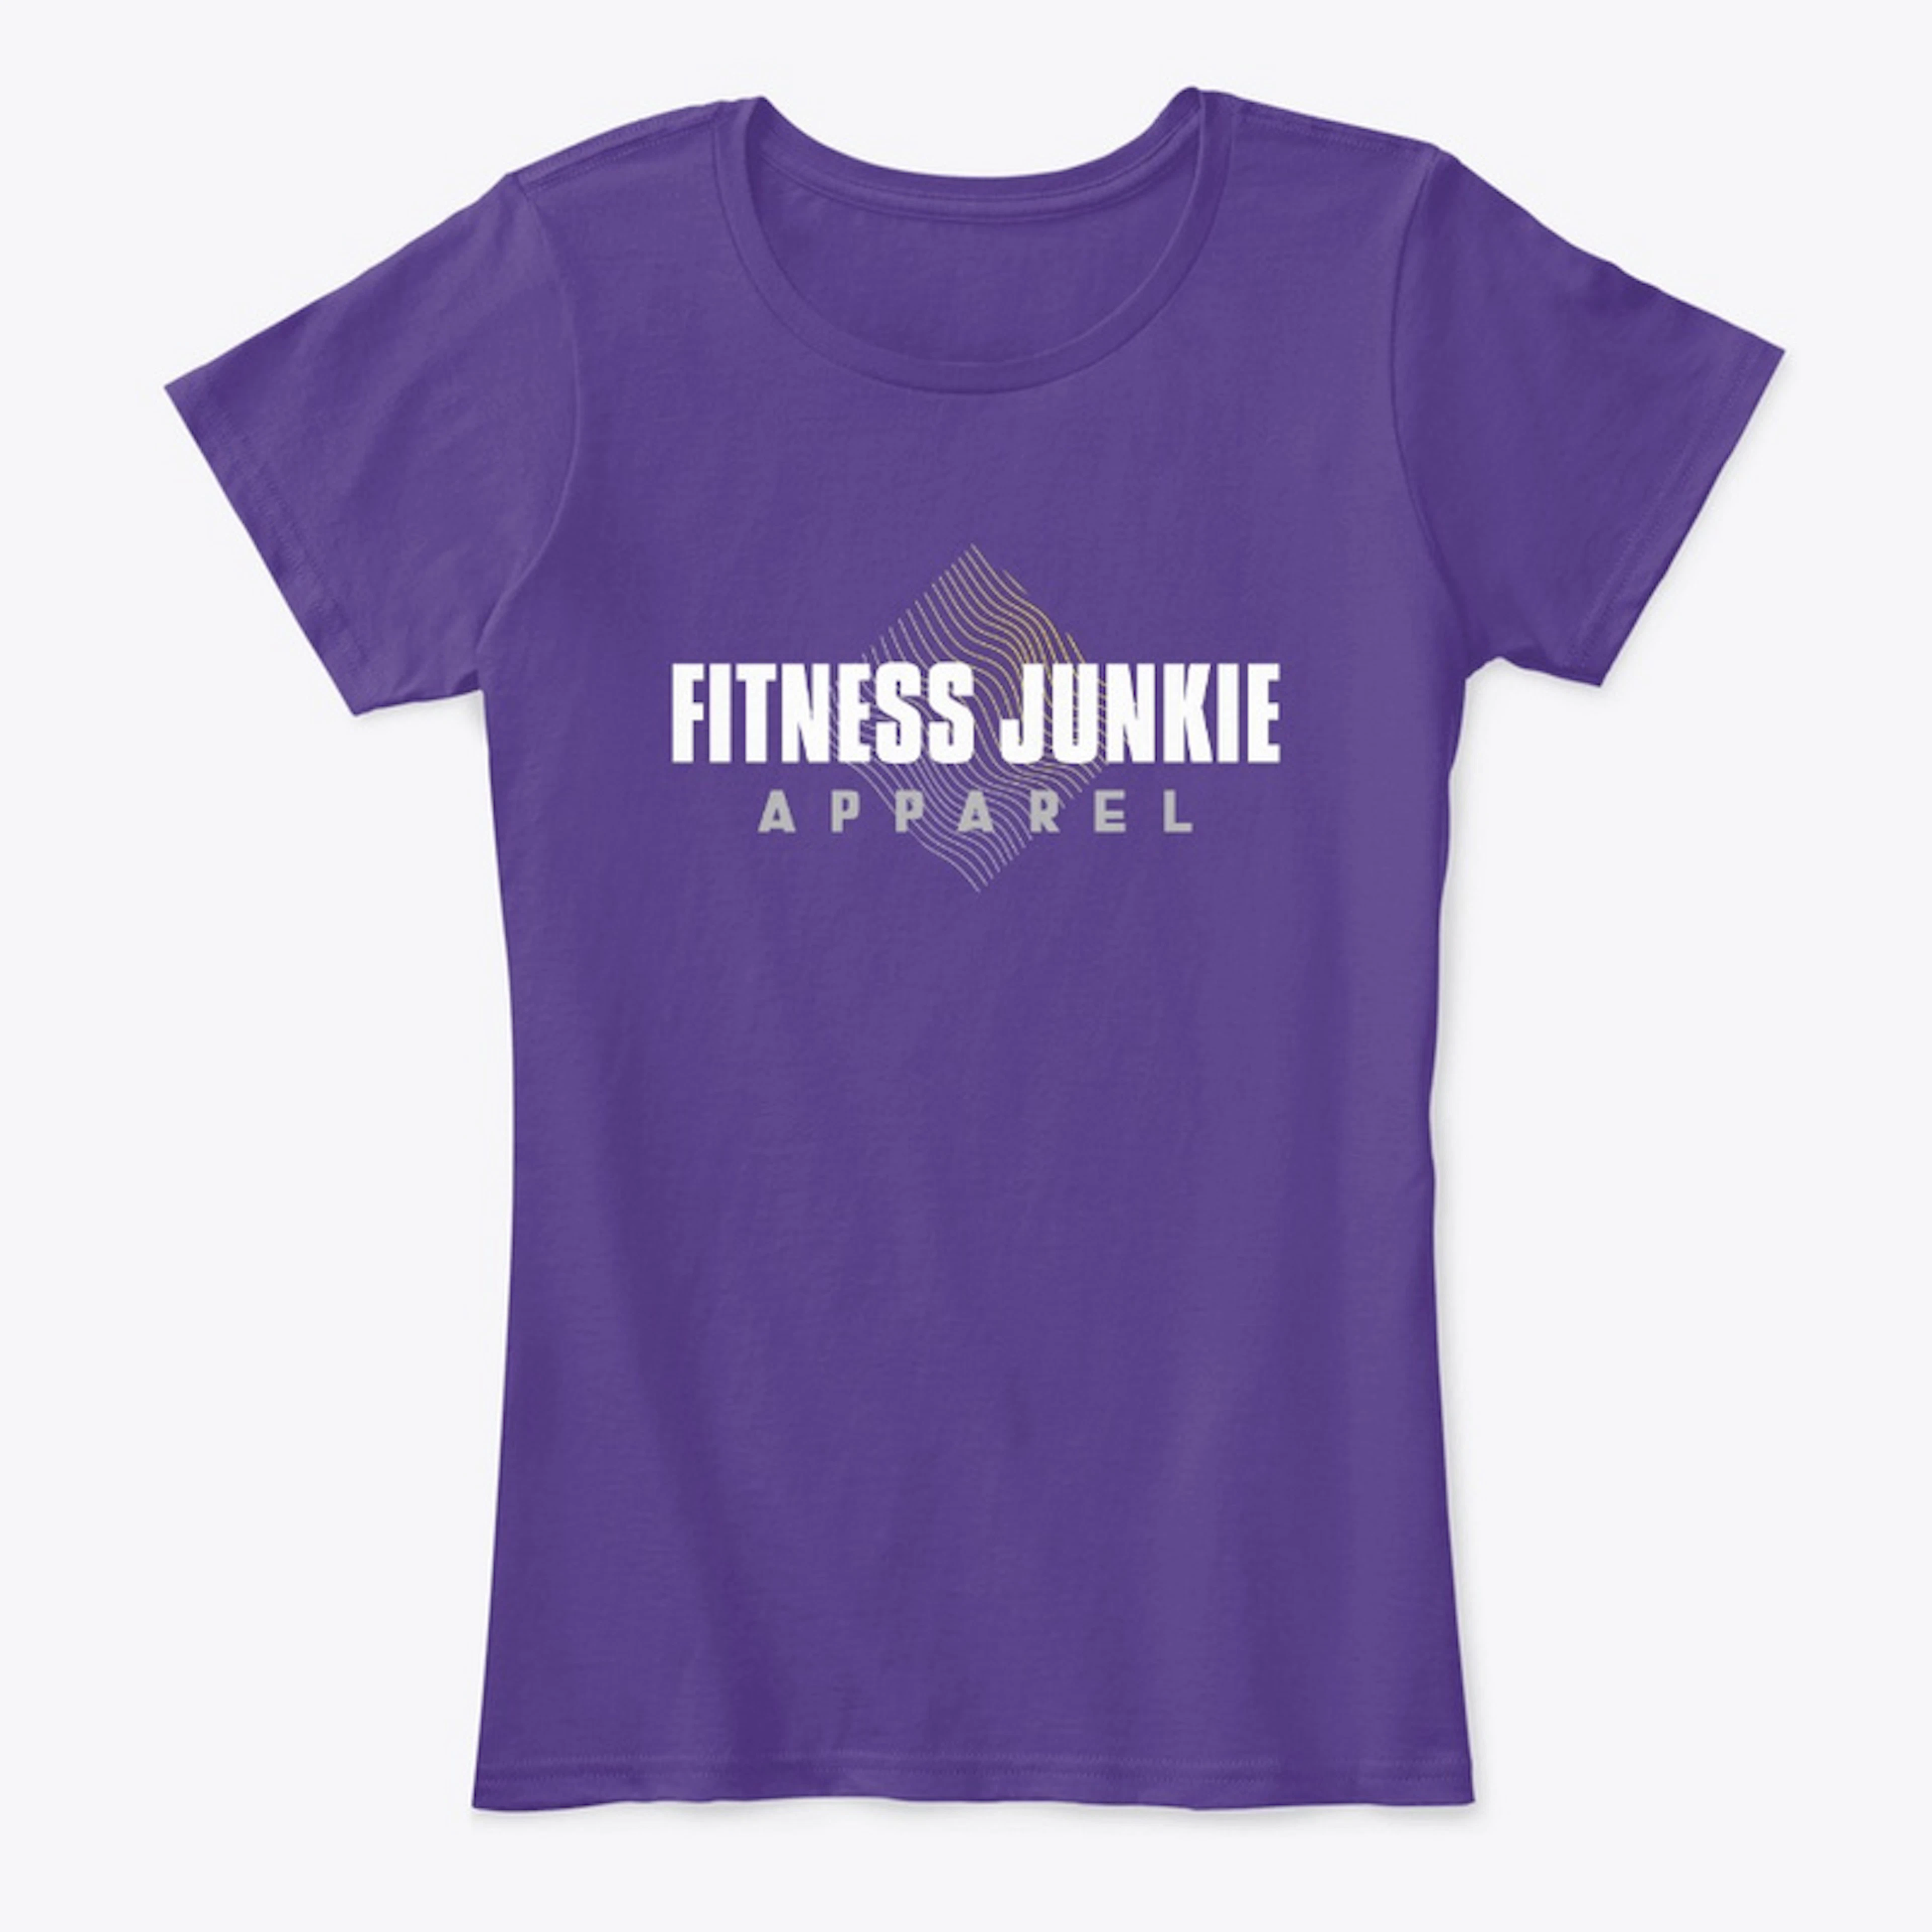 Fitness Junkie original